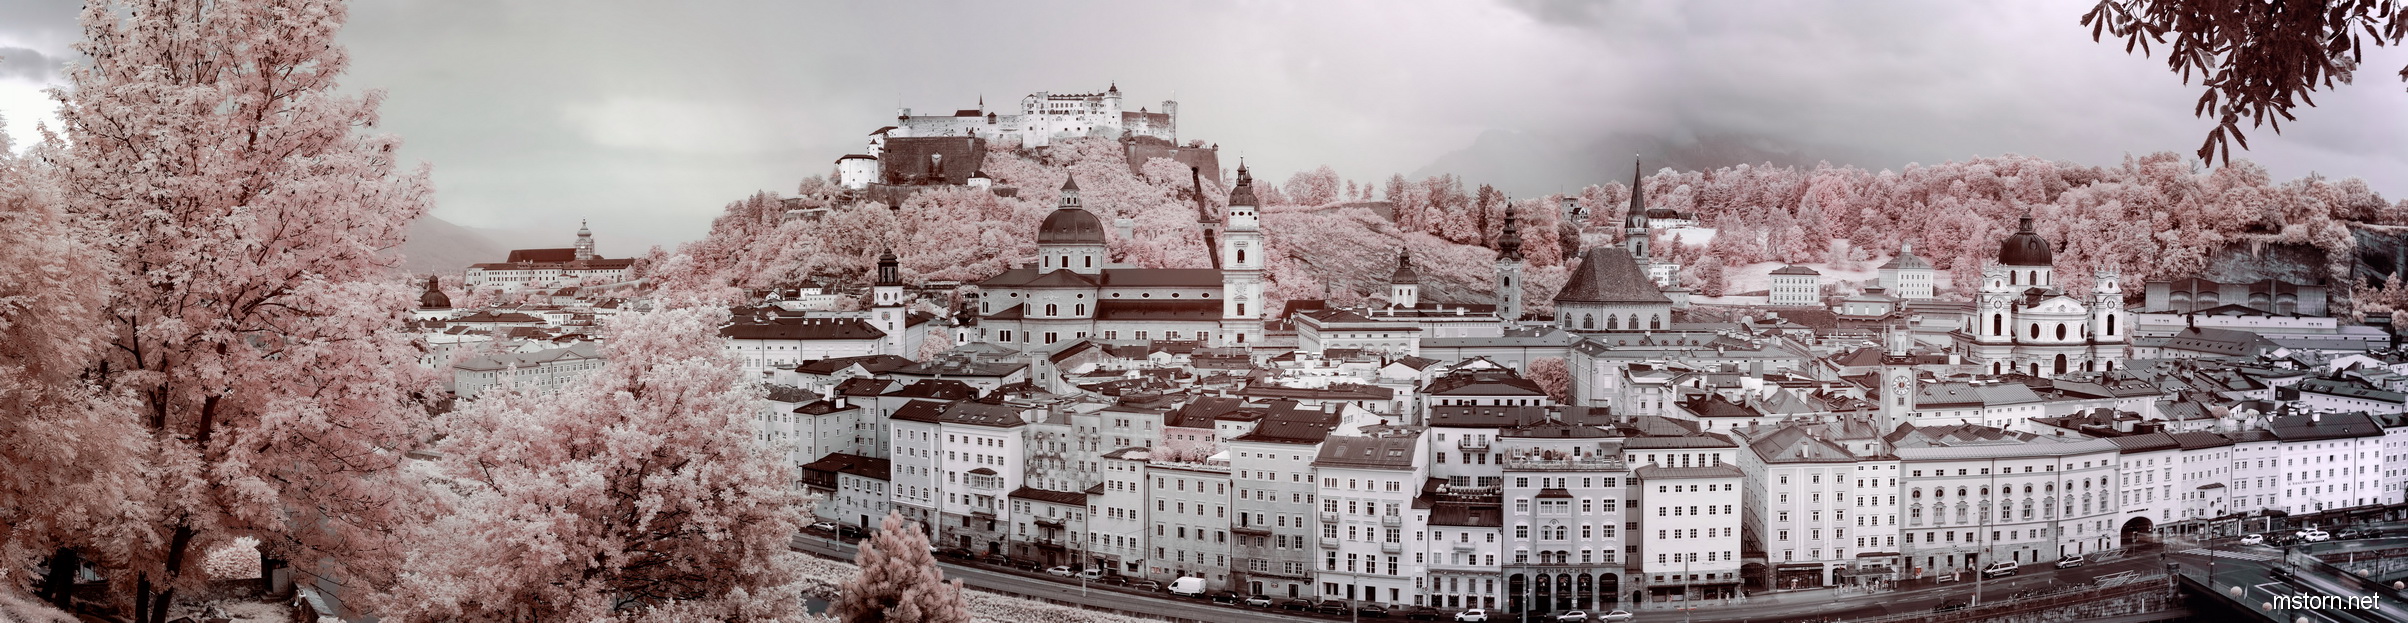 2014-08-31 Salzburg IR pano_smx.jpg